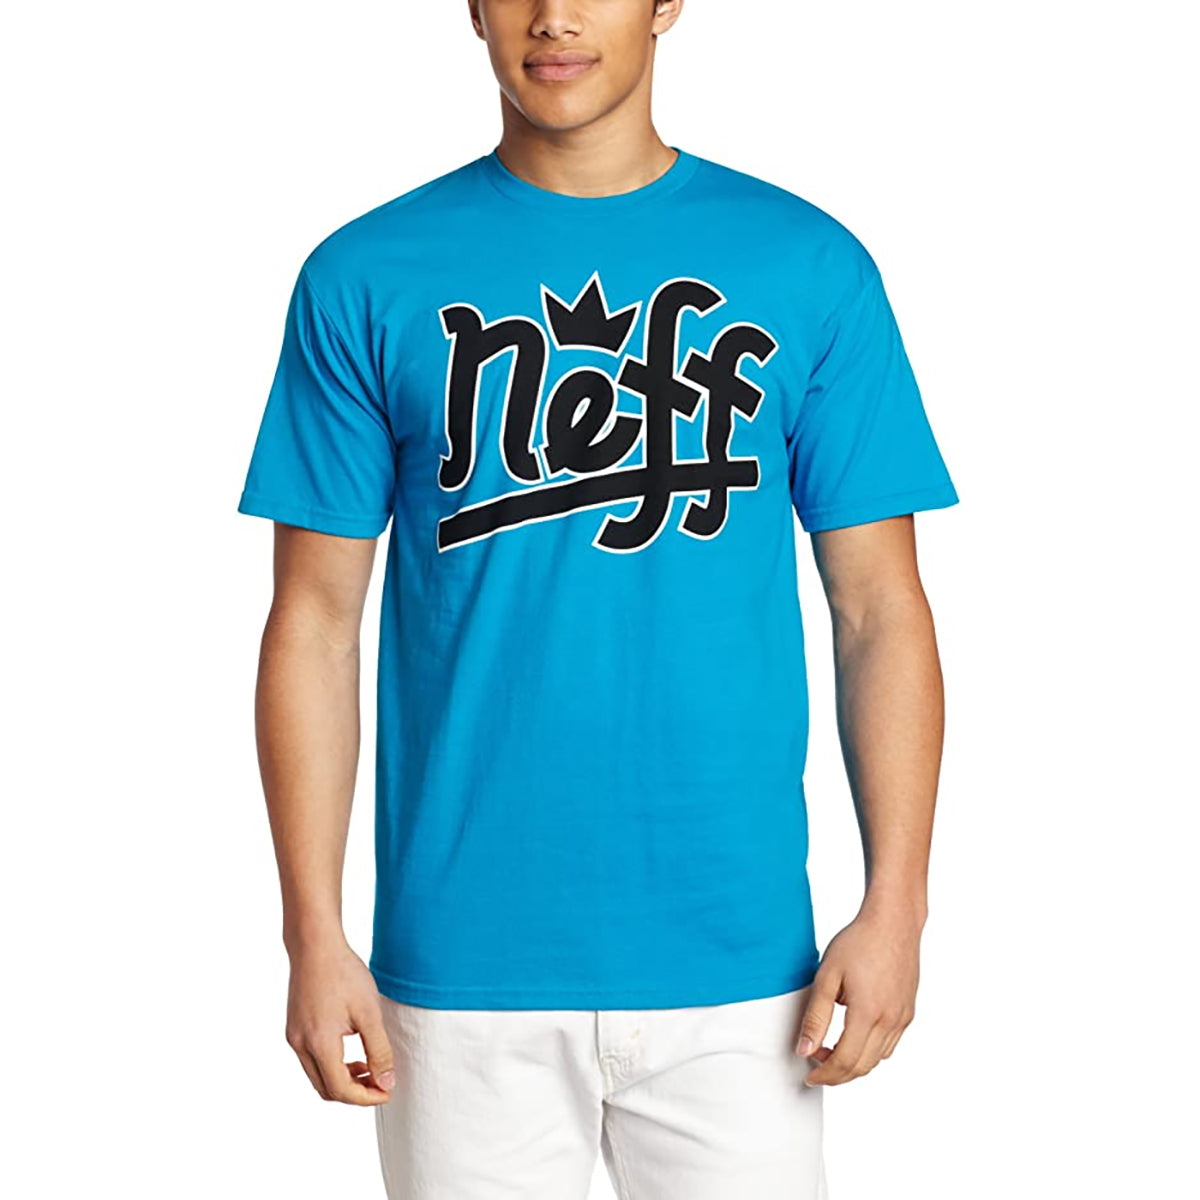 Neff Broke Men's Short-Sleeve Shirts - Turquoise